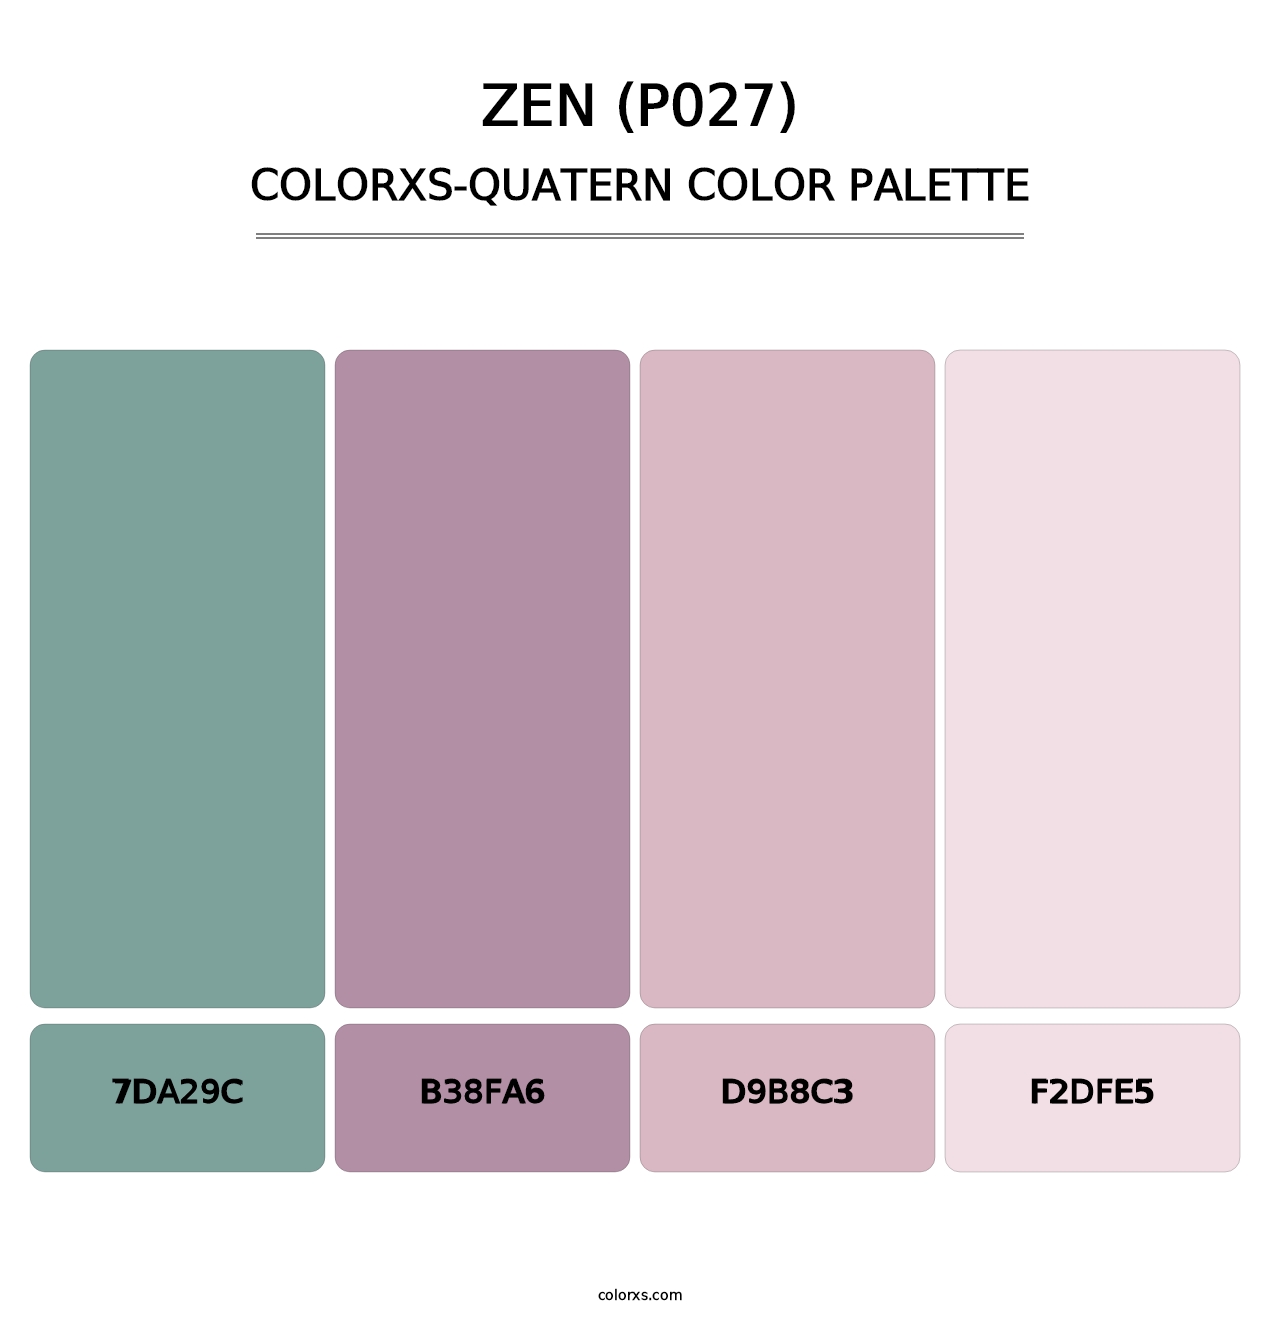 Zen (P027) - Colorxs Quatern Palette